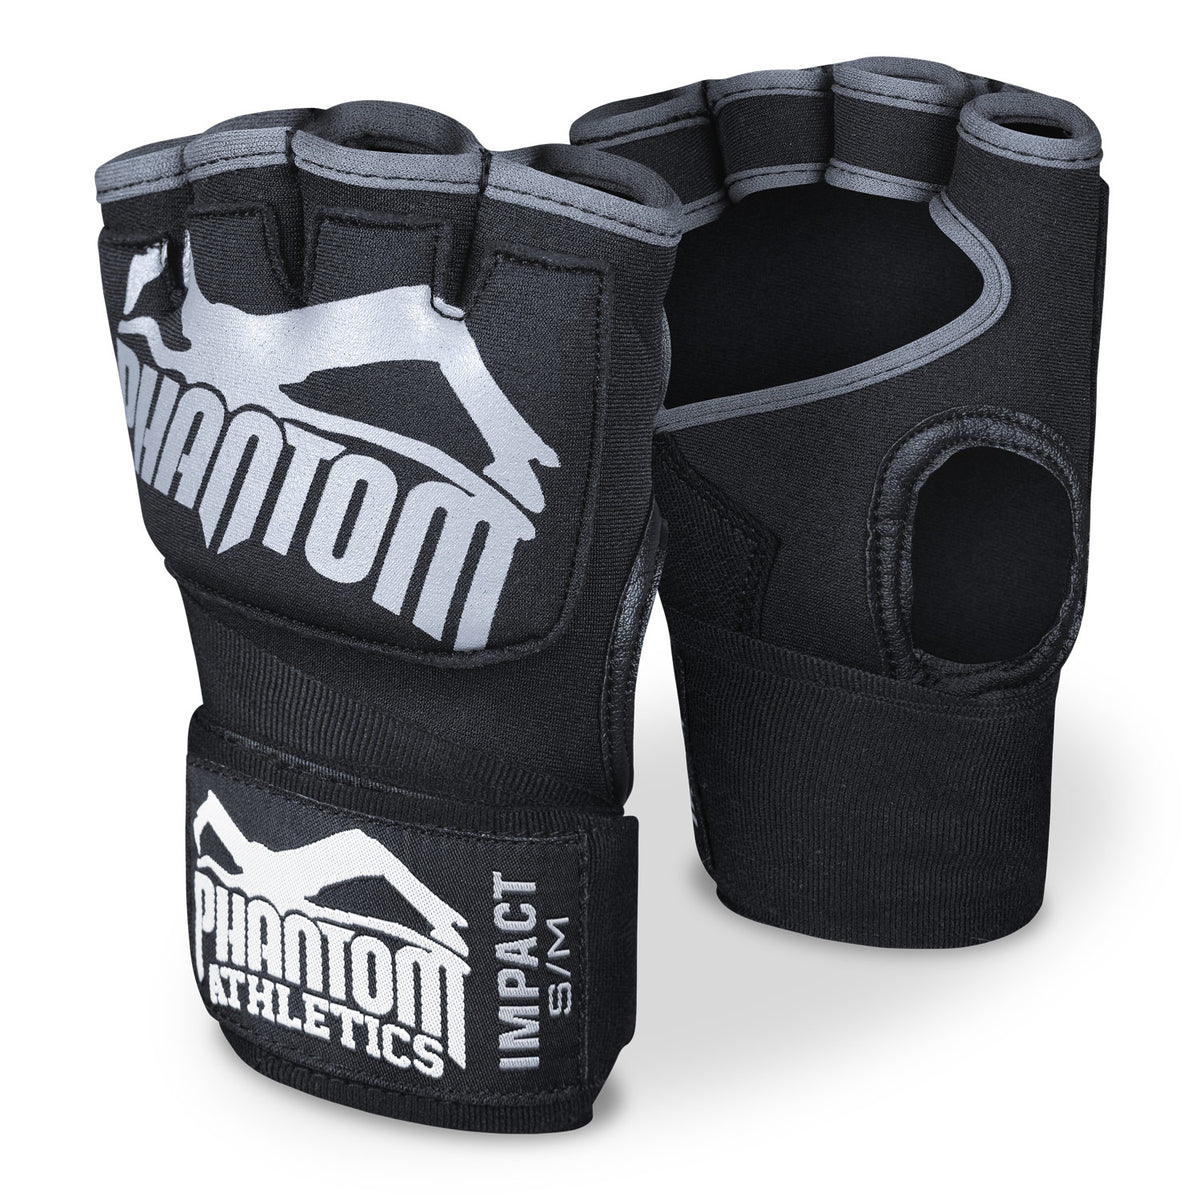 Phantom boks zavoji Impact sa gel punjenjem. Za veću zaštitu u vašem treningu borilačkih vještina.